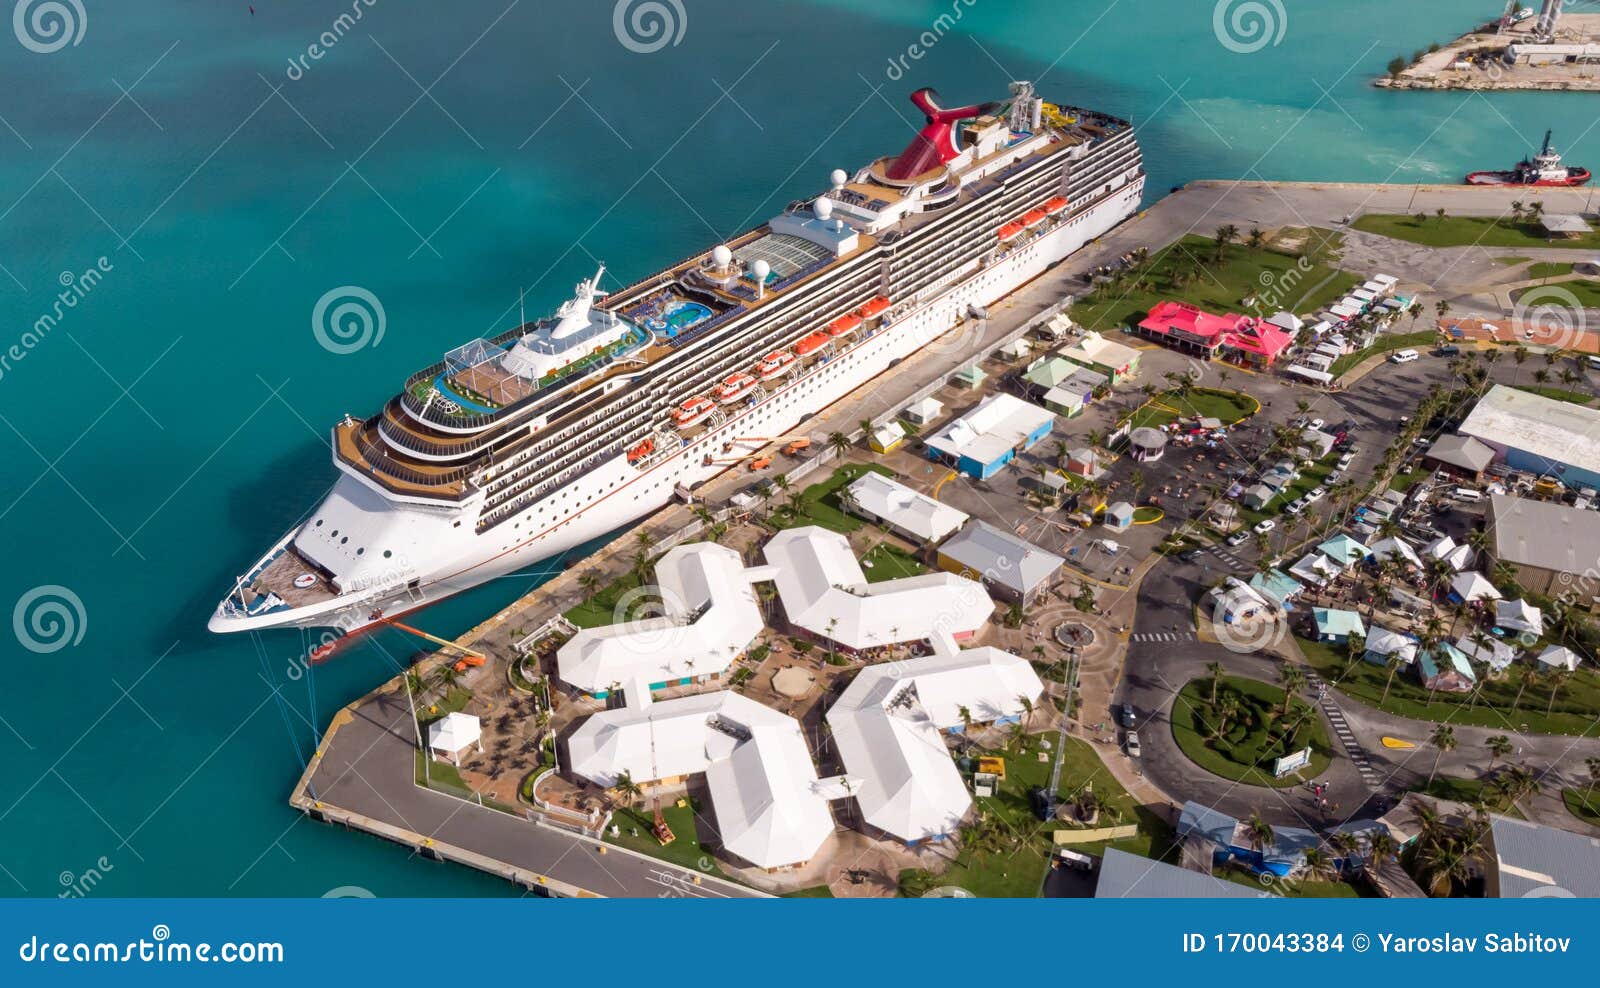 grand bahama island cruise ships